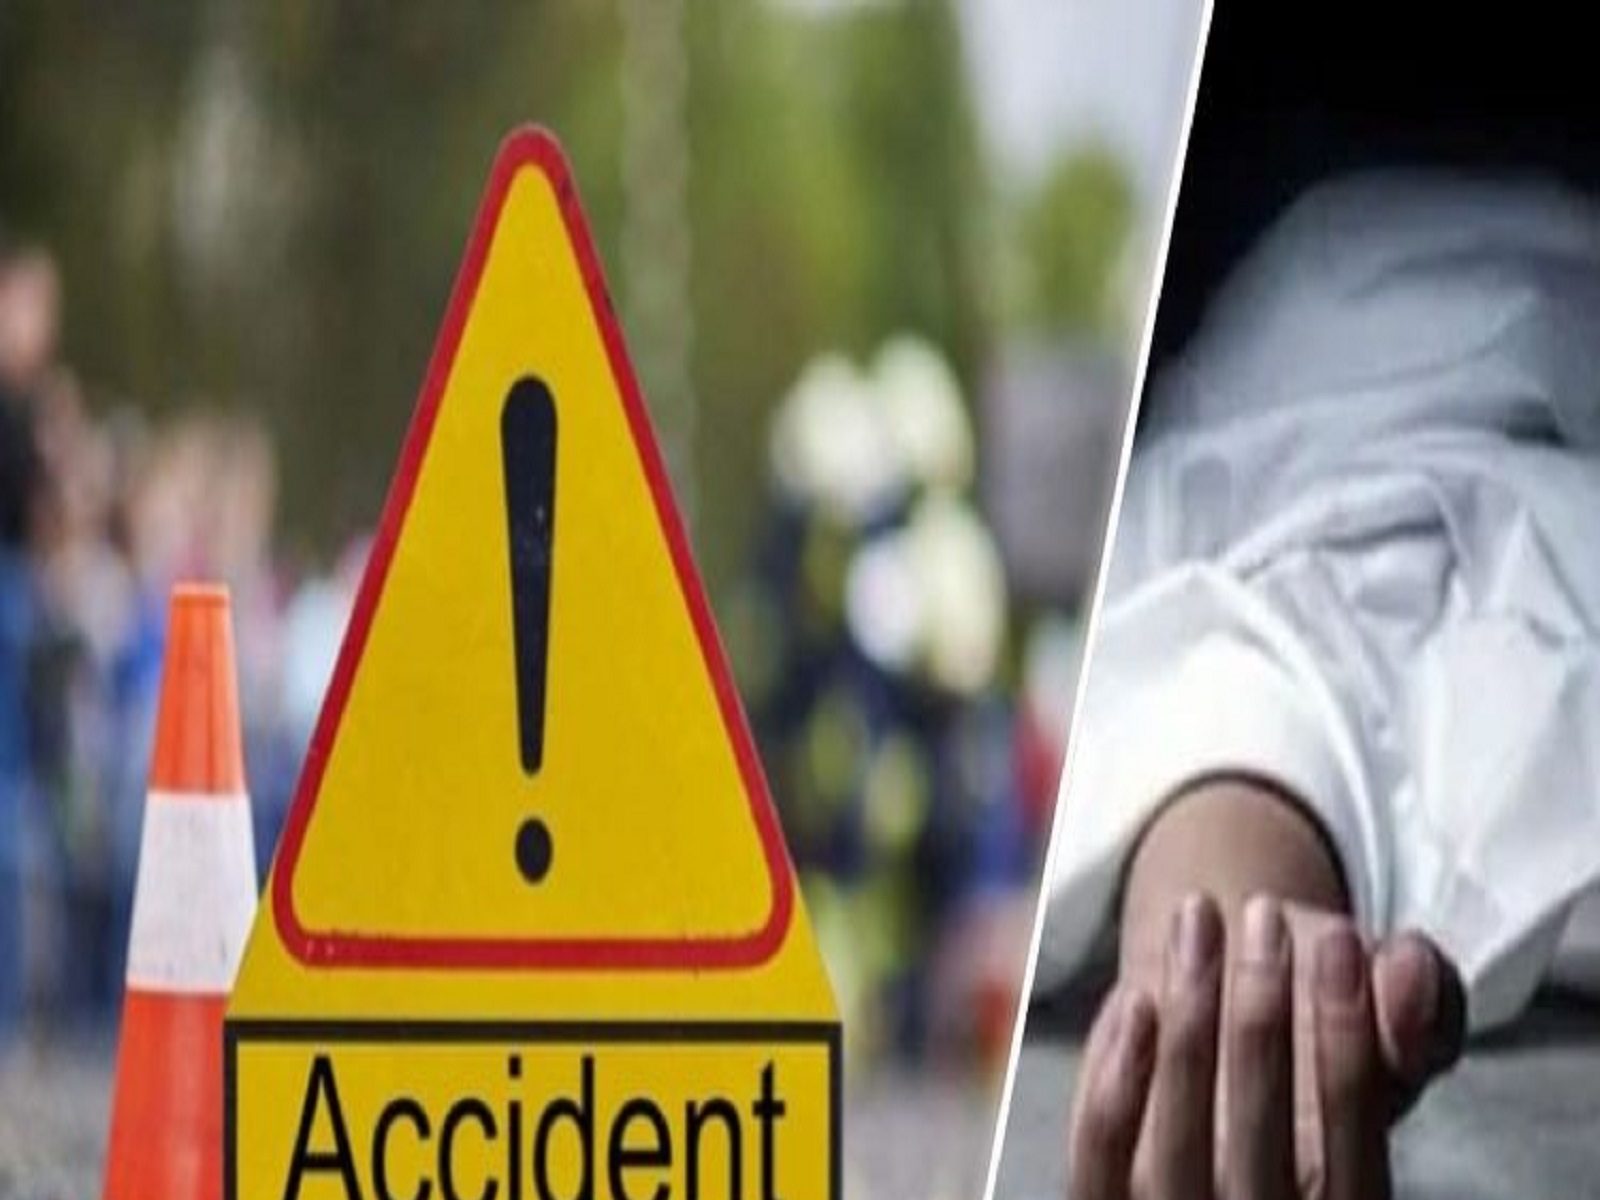 दिल्ली: सड़क दुर्घटना में मध्य प्रदेश के तीन लोगों की मौत